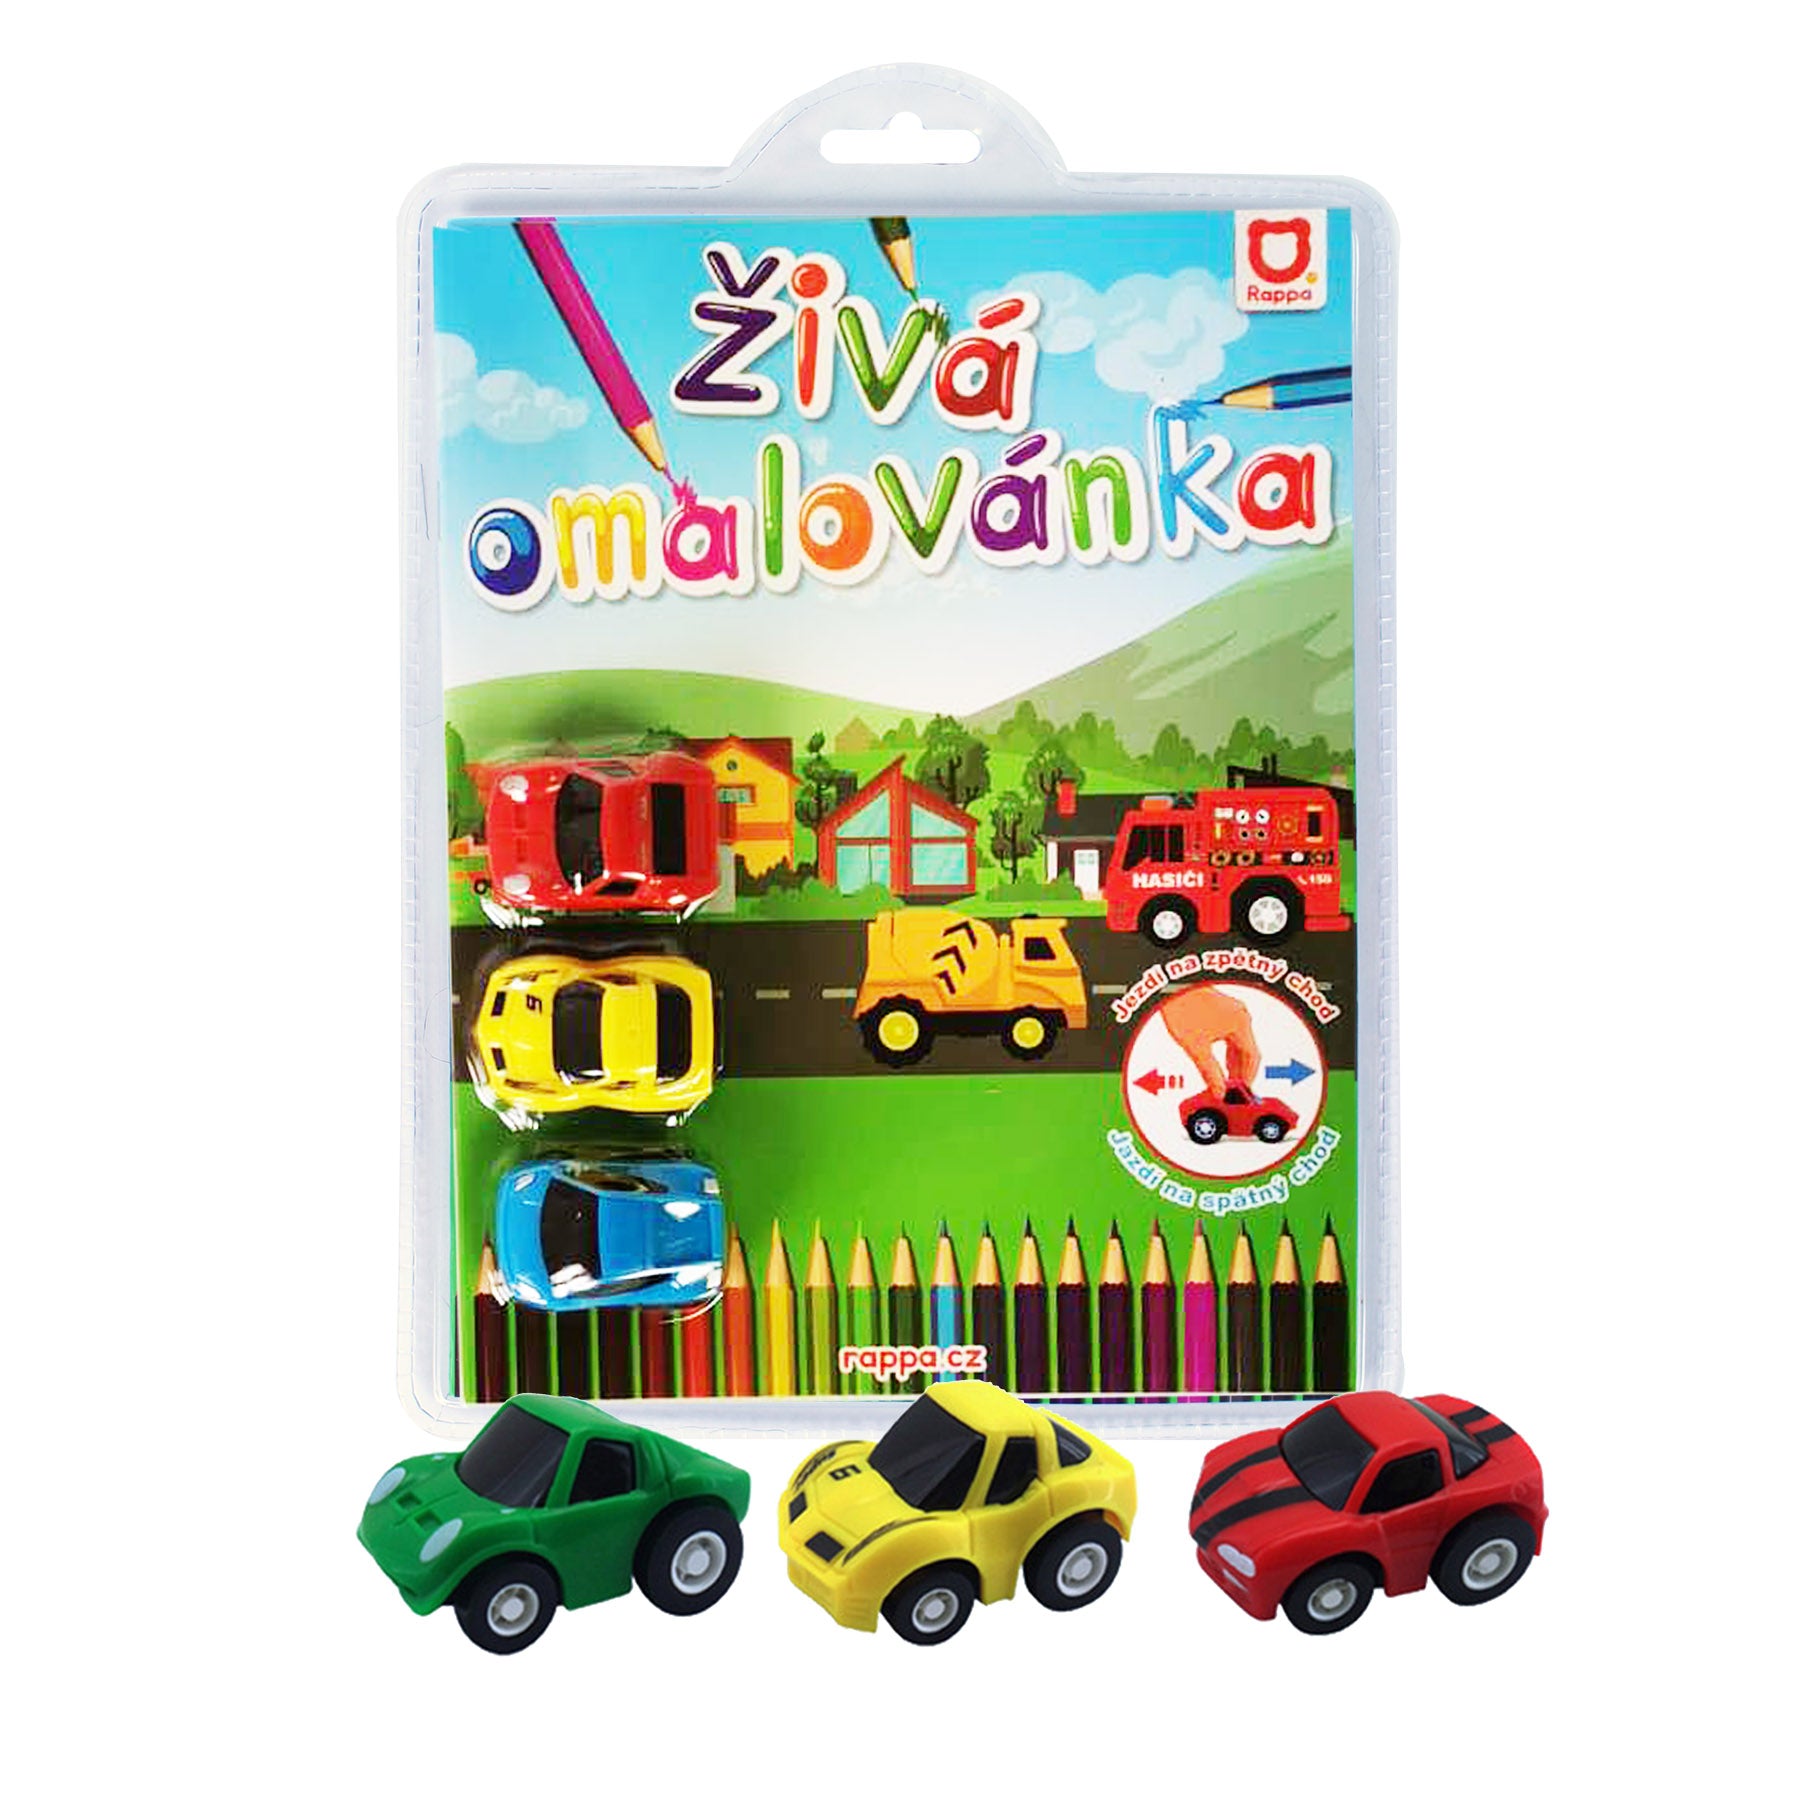 Ziva omalovanka zavodni auta 3 ks | Czech Toys | czechmovie